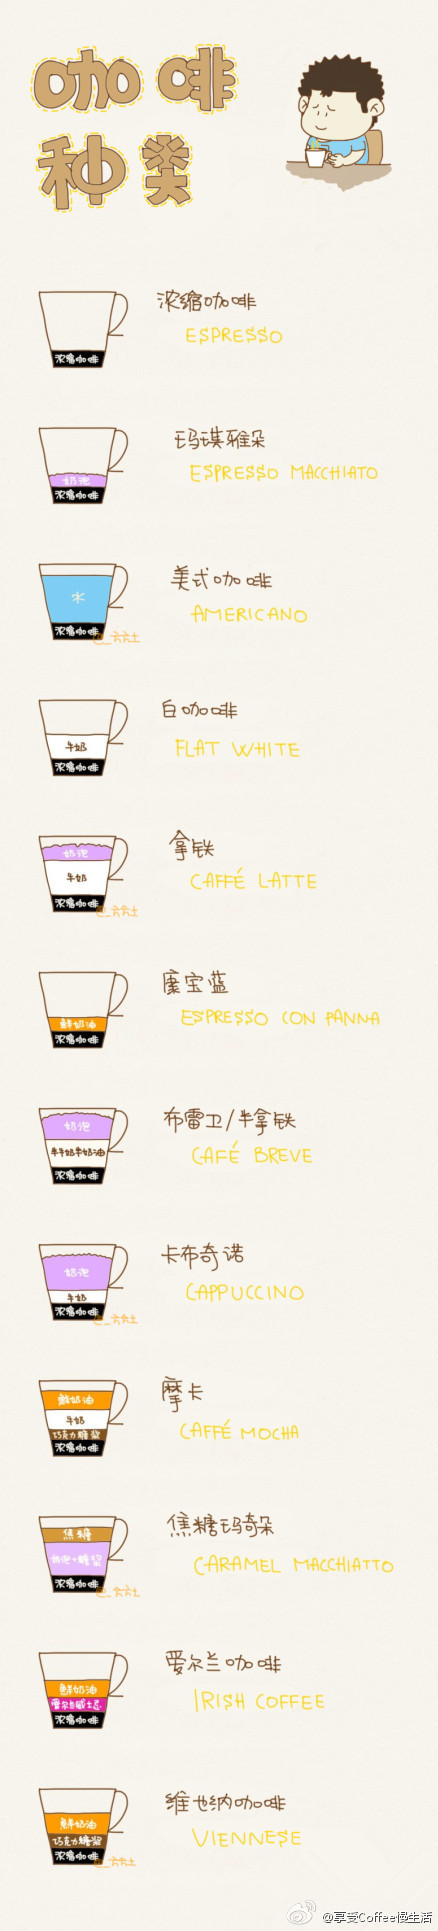 【咖啡种类】